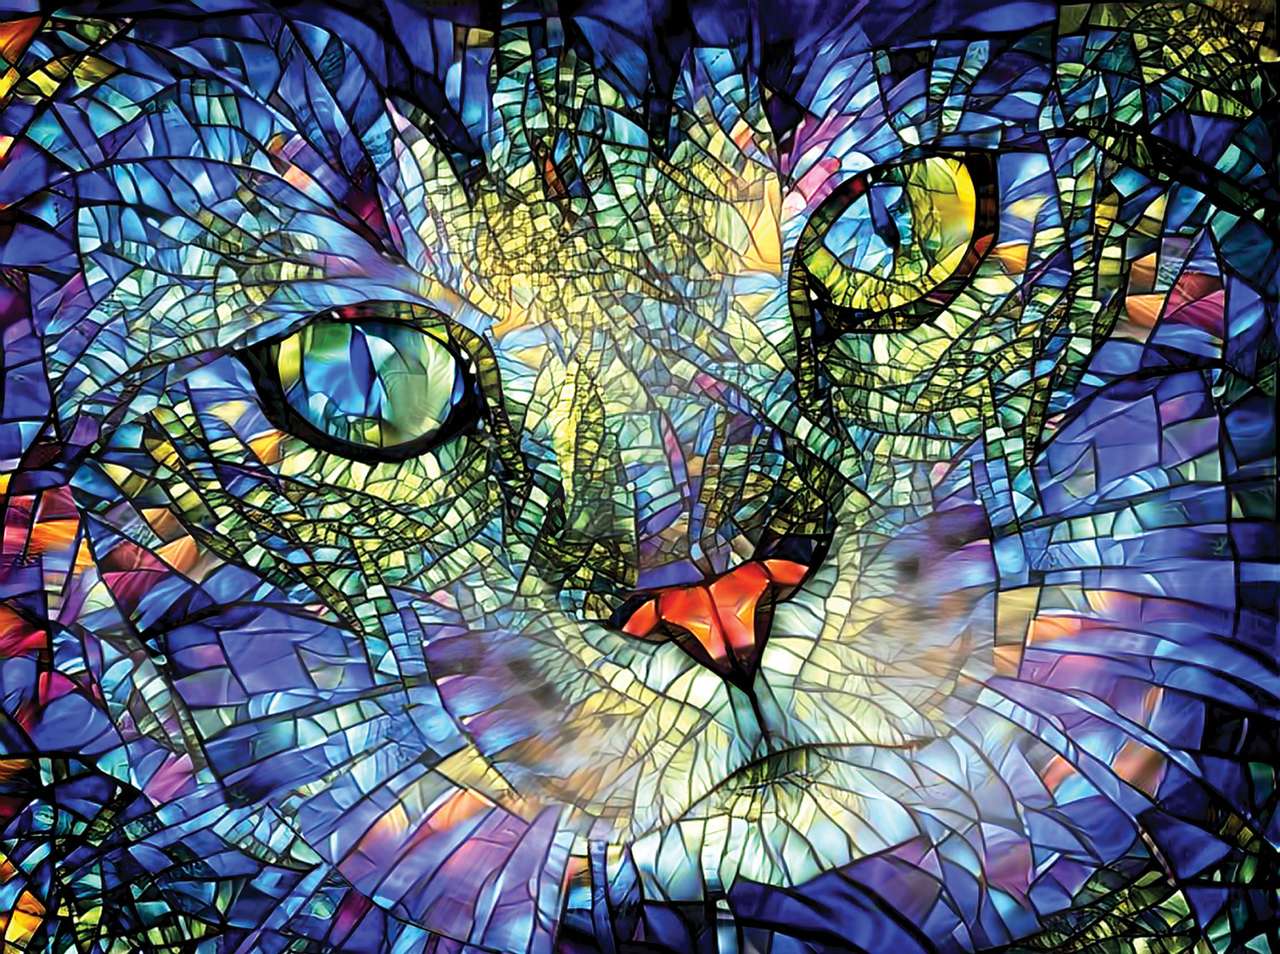 Koťátko z barevného skla, krása práce potěší skládačky online